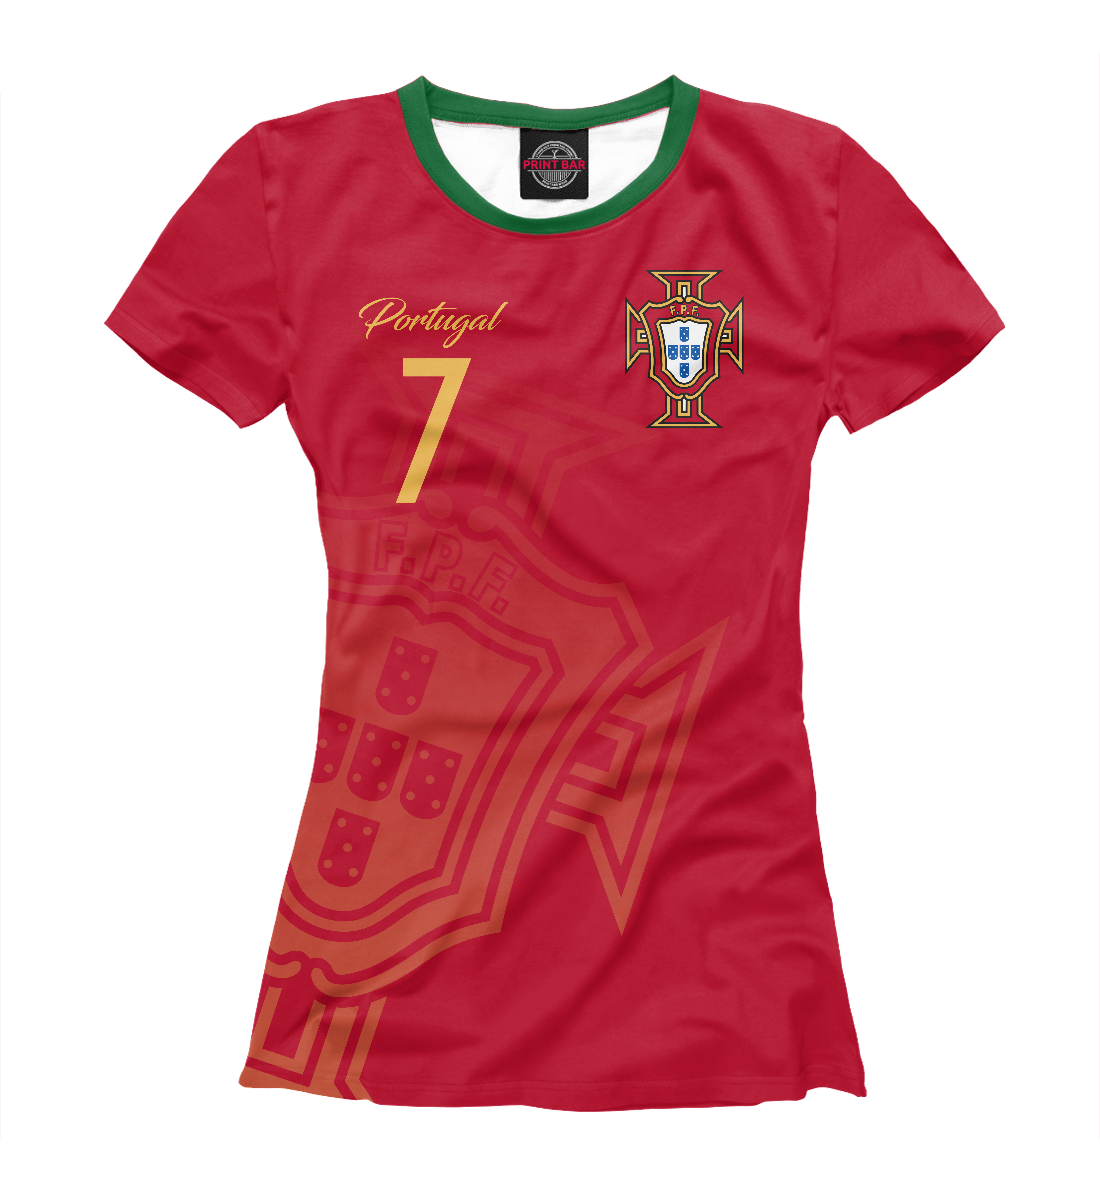 Детская Футболка Криштиану Роналду - Сборная Португалии для девочек, артикул FLT-712423-fut-1mp